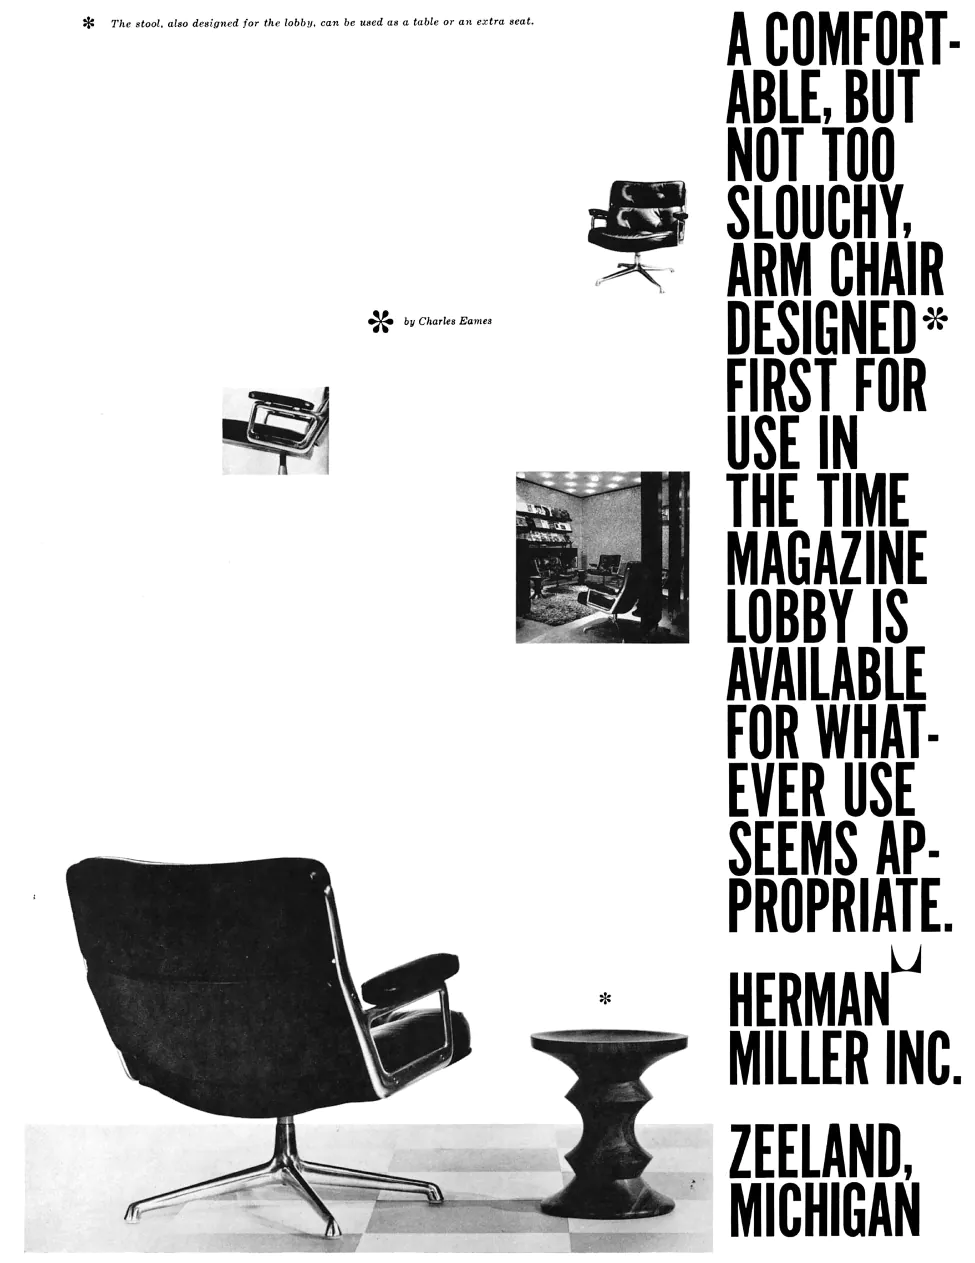 Design inspiration: Herman Miller ad